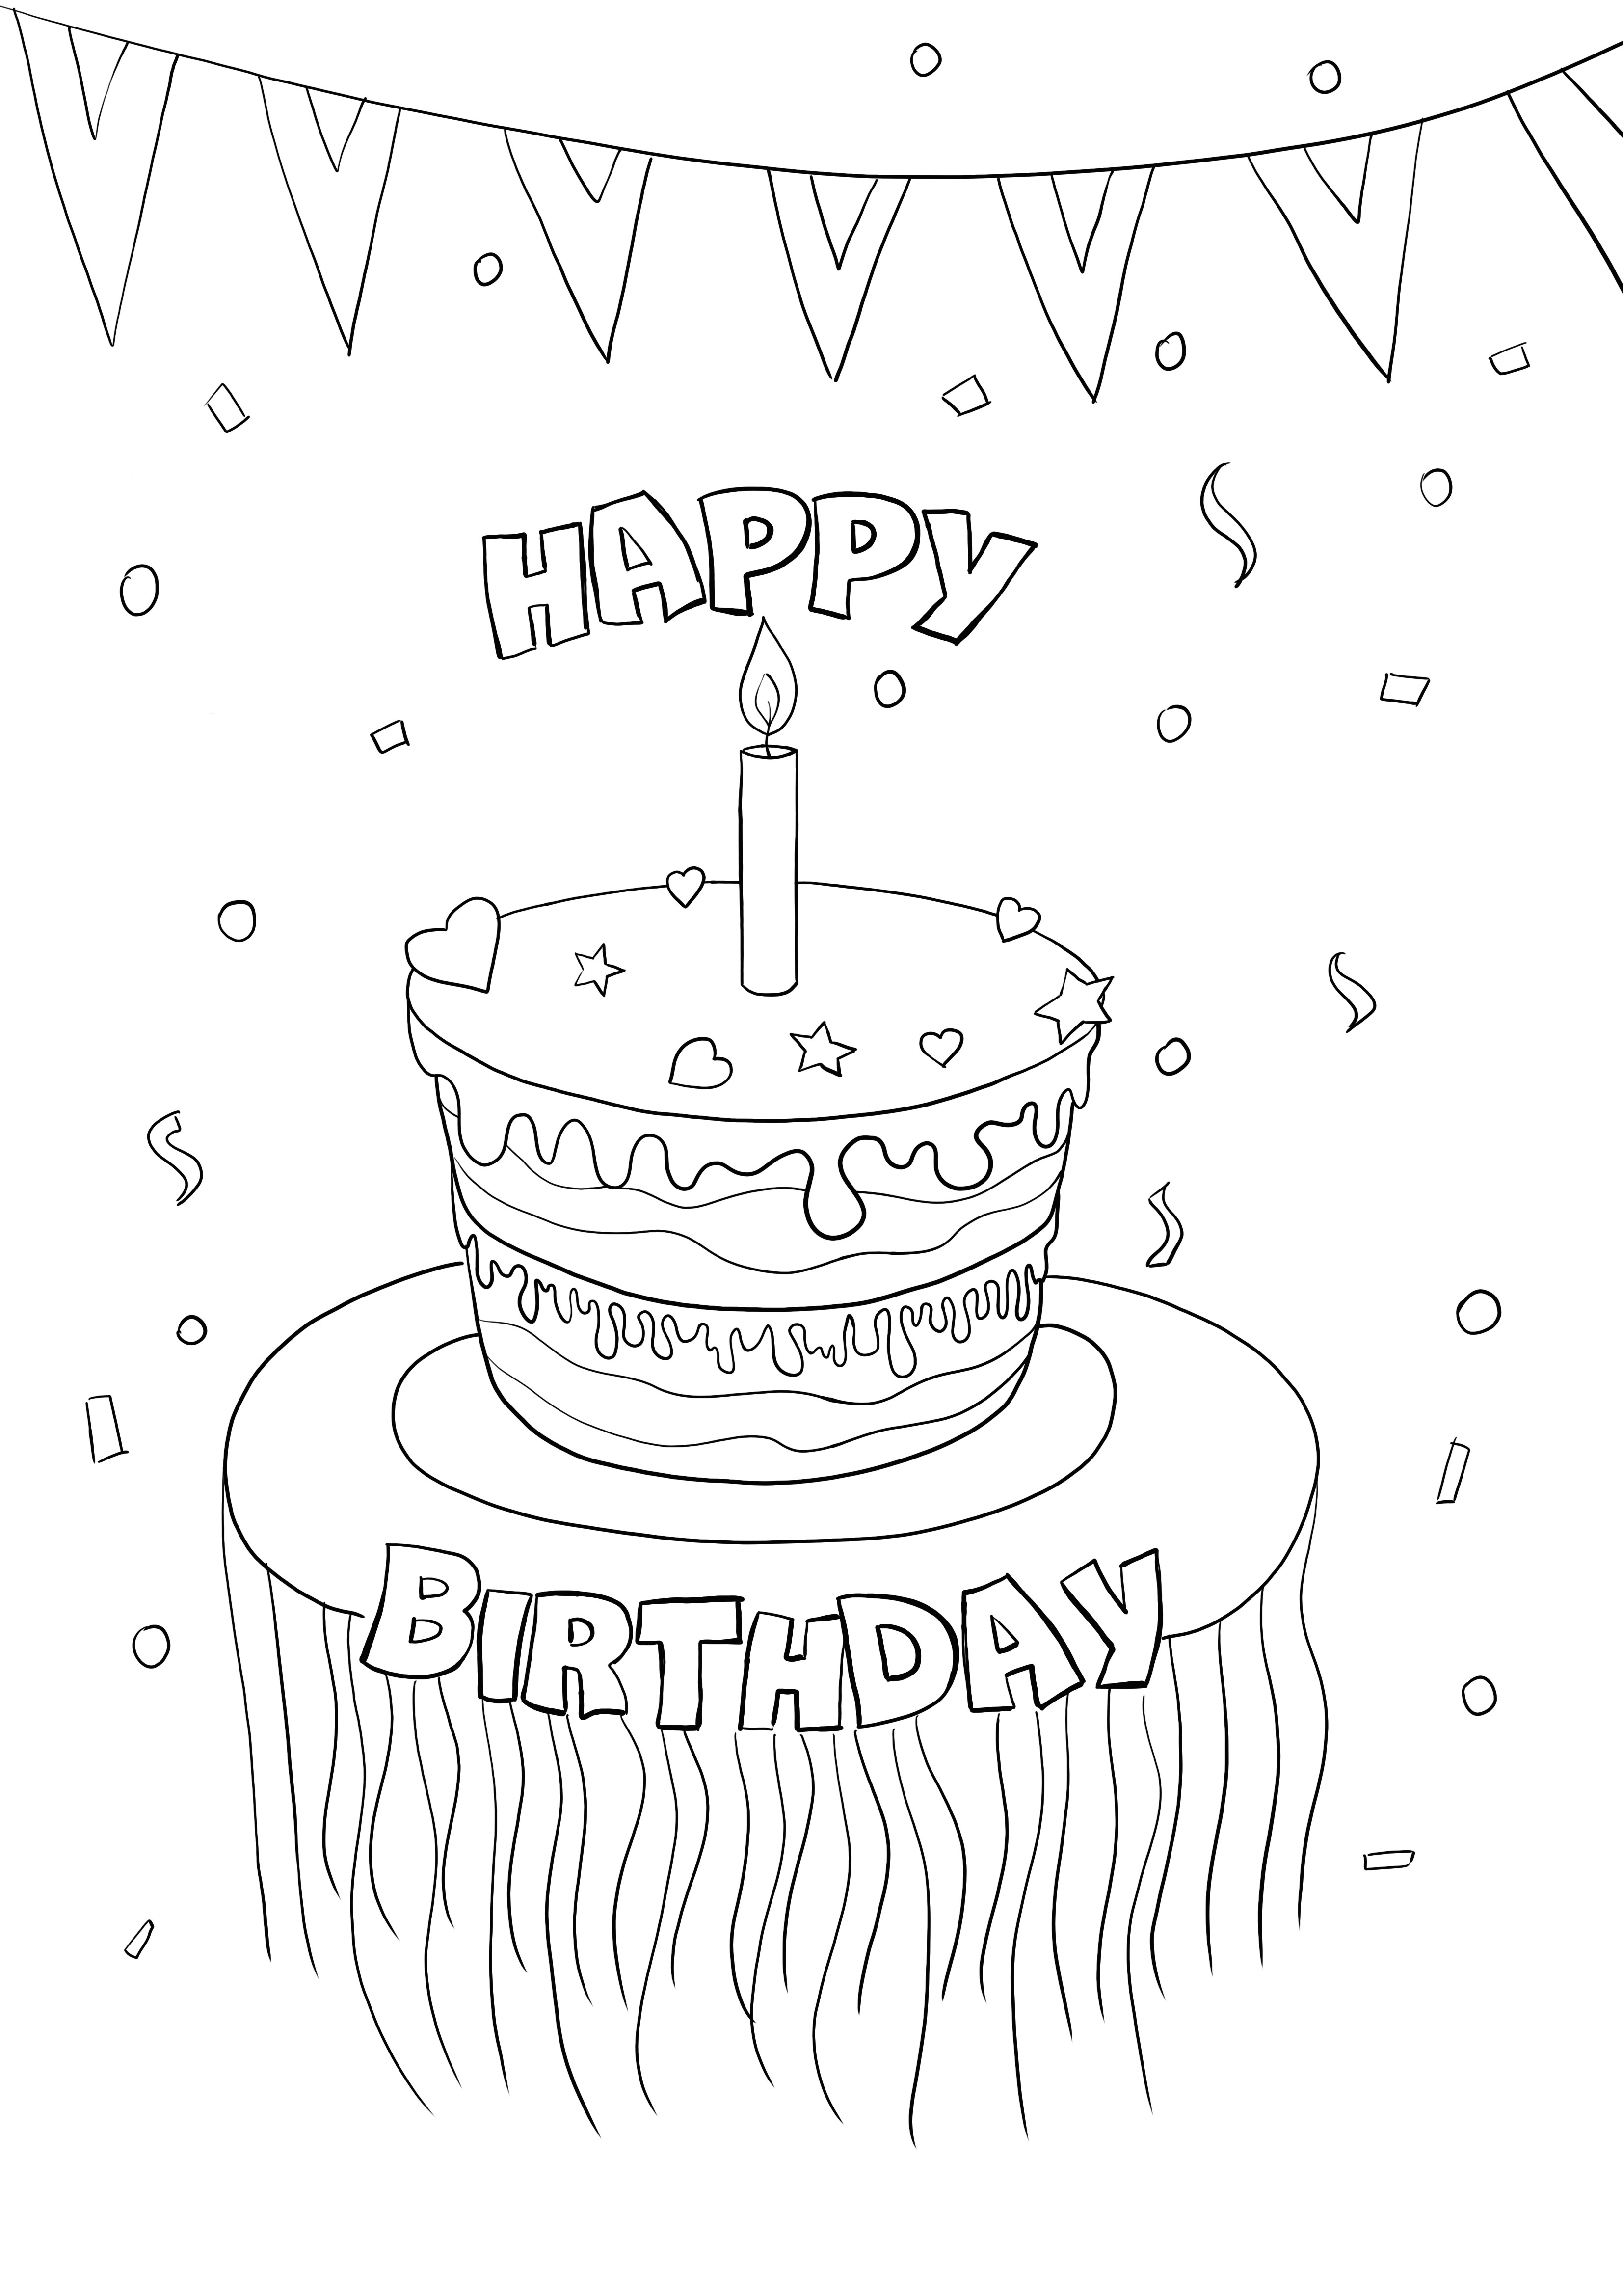 selamat ulang tahun kue untuk diwarnai dan dicetak gratis